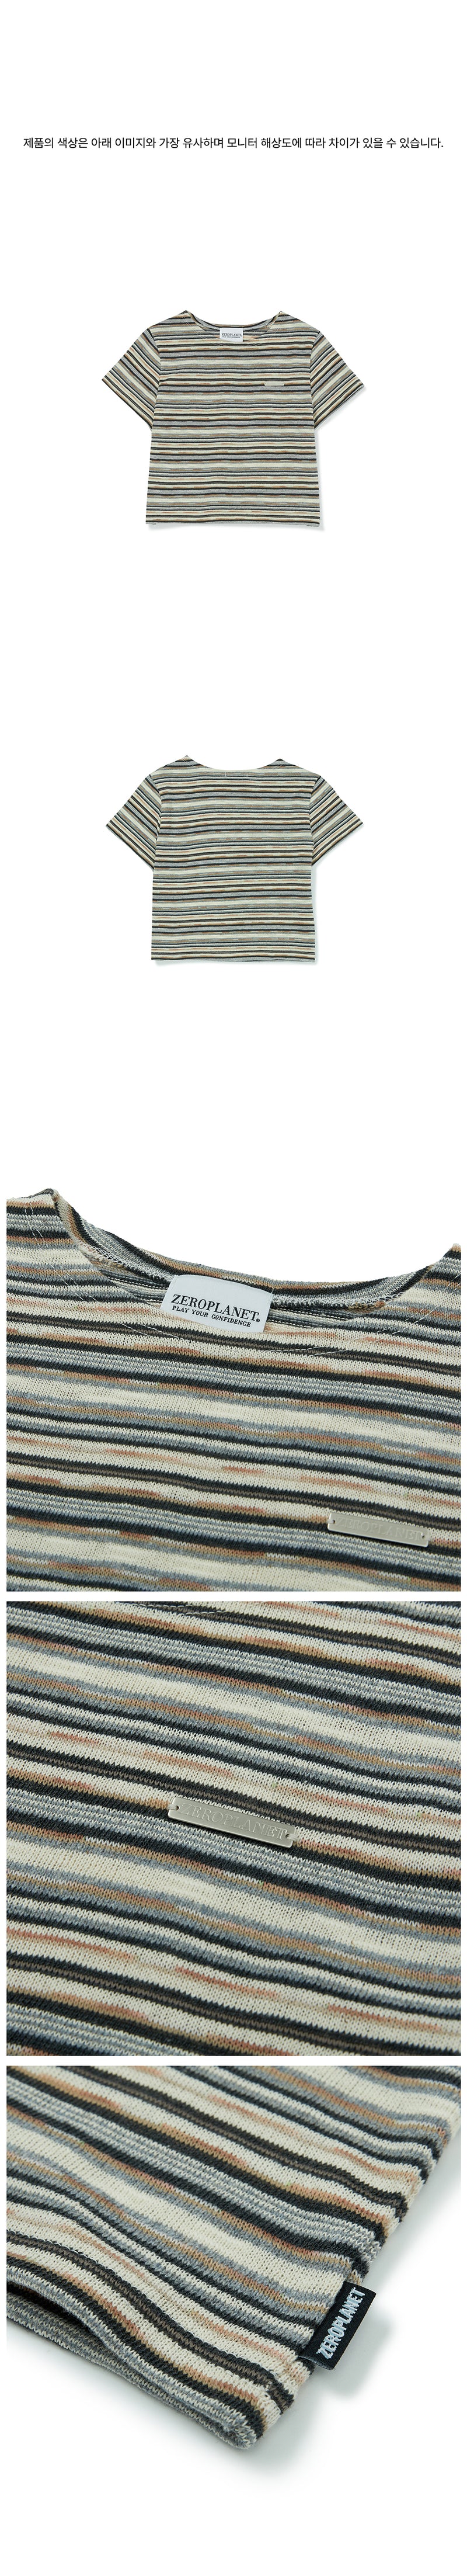 ストライプ 半袖 Tシャツ・カットソー/Summer Knit Stripe Crop Top [2カラー]